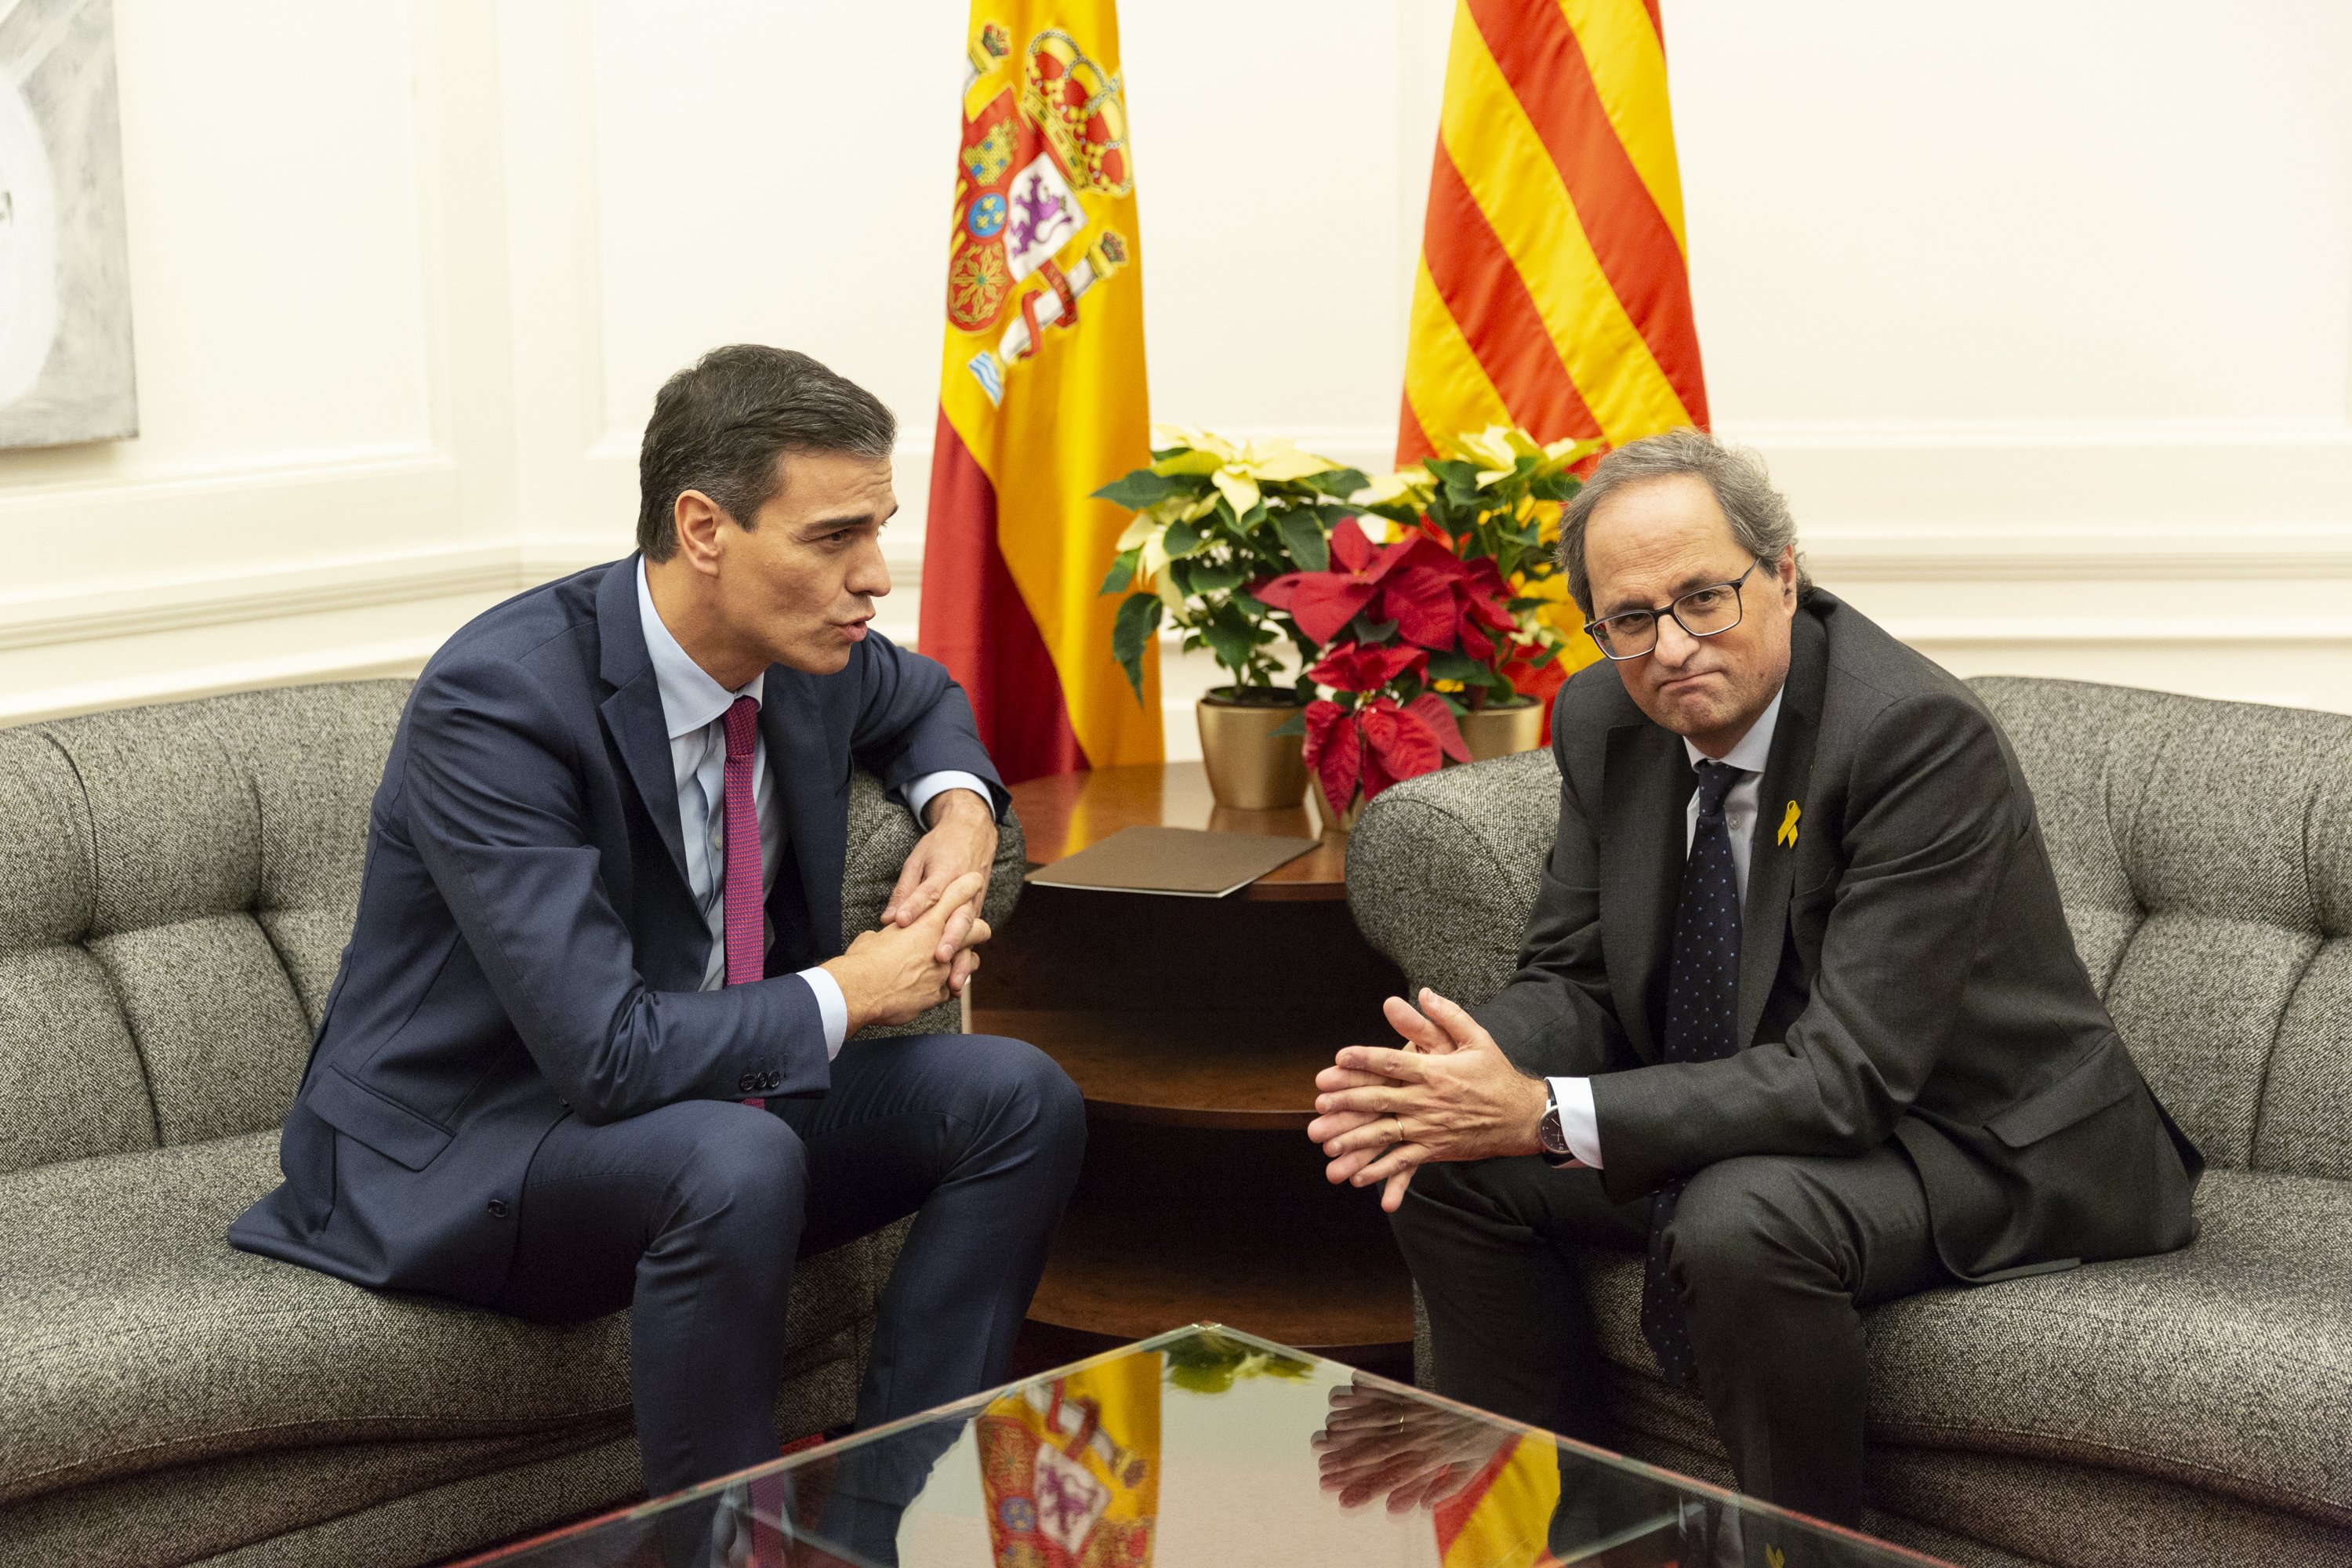 Creus que Sánchez és un interlocutor fiable per a Catalunya?